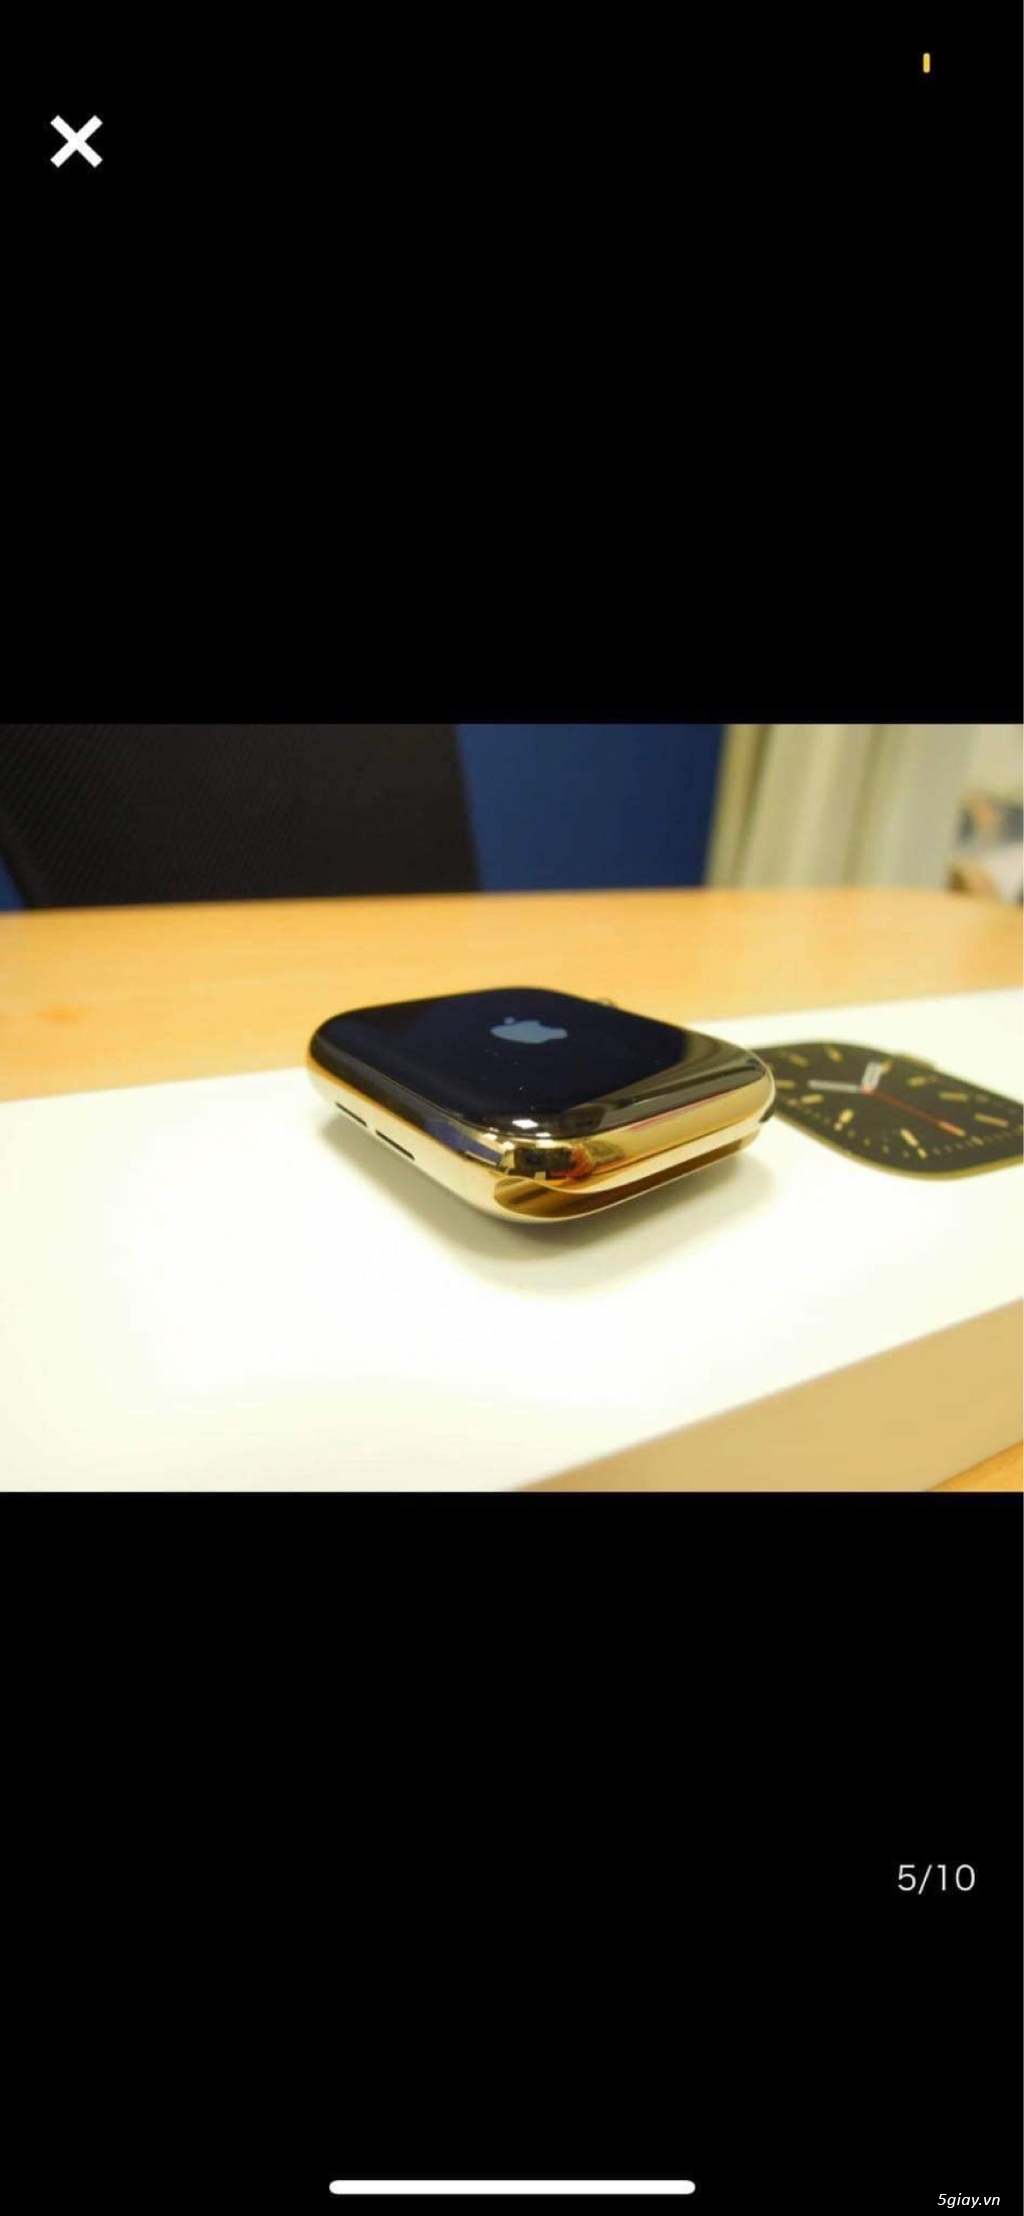 Đồng hồ Apple đồ công nghệ thiết yếu và thời trang - 5